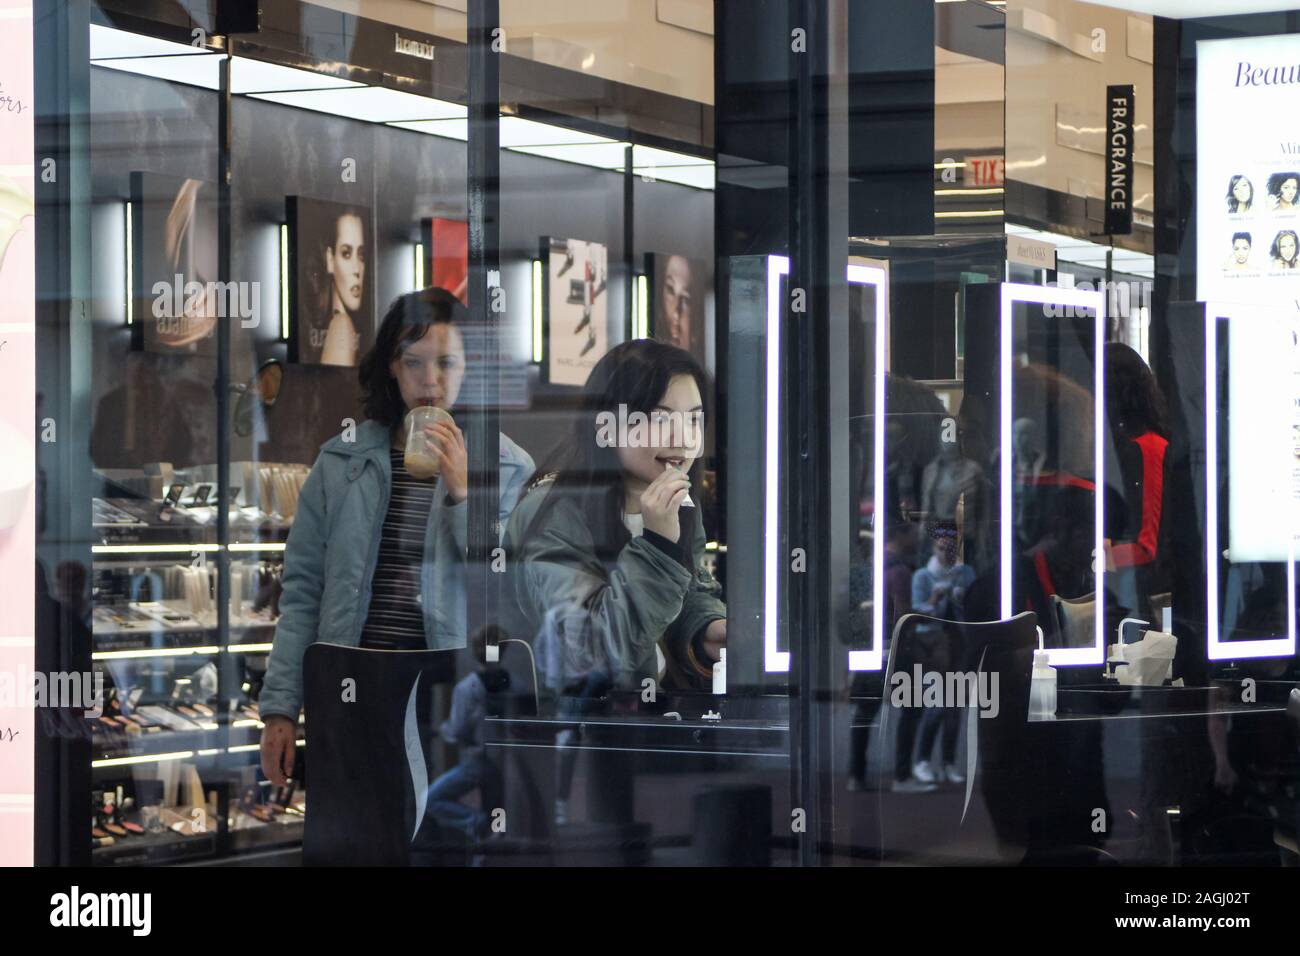 Junge Frauen oder Mädchen im Teenager-Alter unter beauty Store durch Schaufenster gesehen Stockfoto